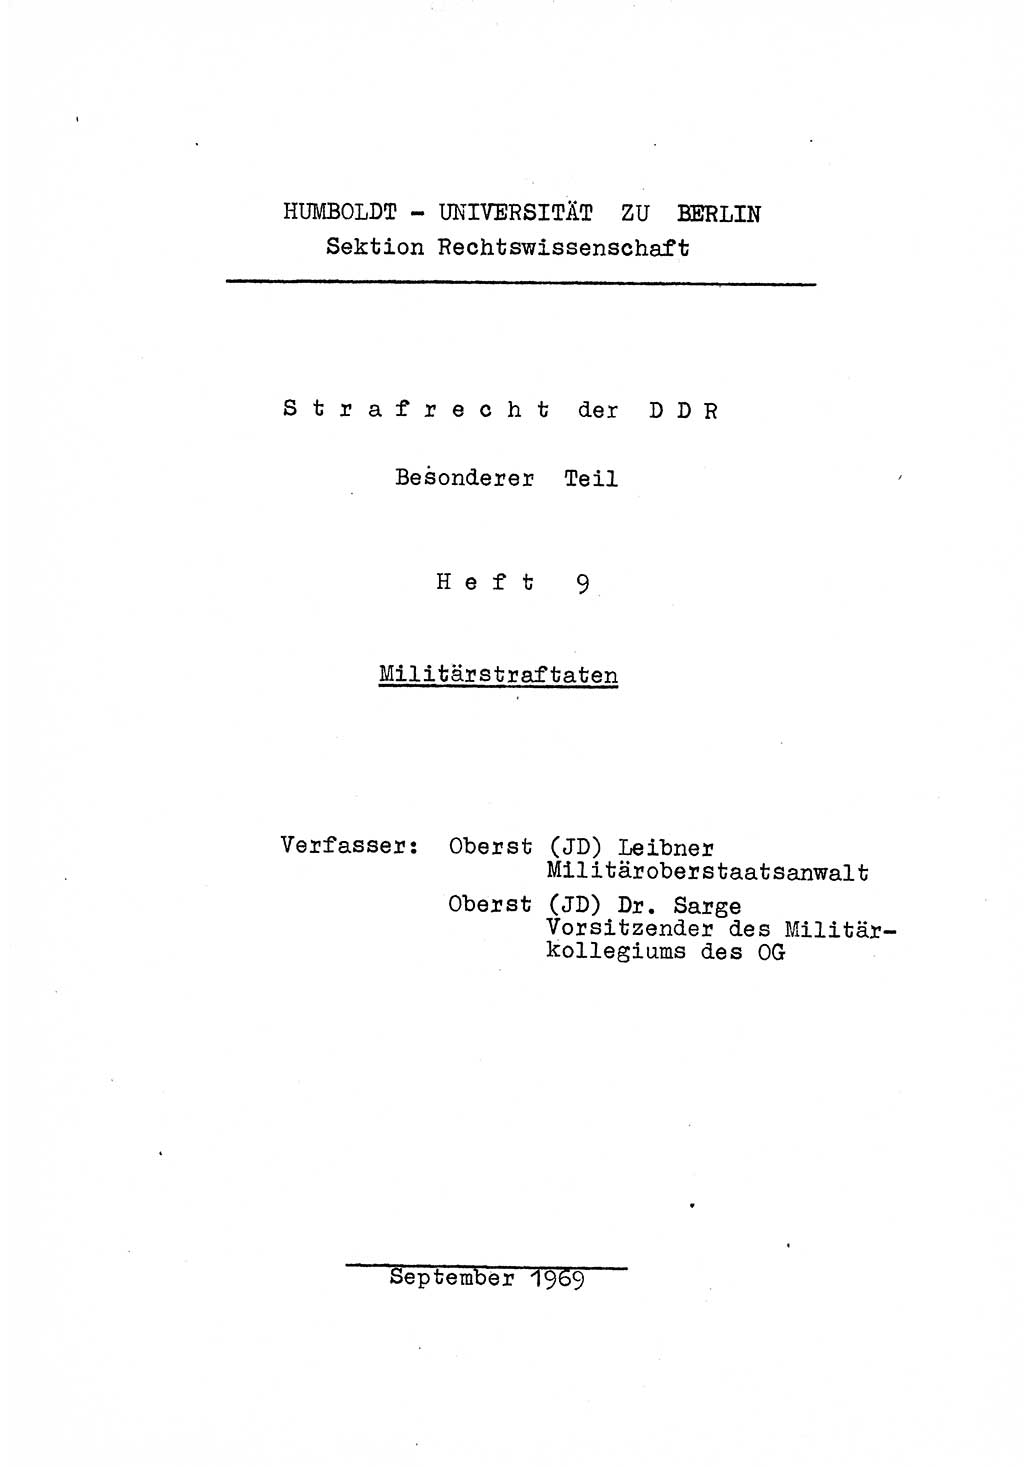 Strafrecht der DDR (Deutsche Demokratische Republik), Besonderer Teil, Lehrmaterial, Heft 9 1969, Seite 1 (Strafr. DDR BT Lehrmat. H. 9 1969, S. 1)